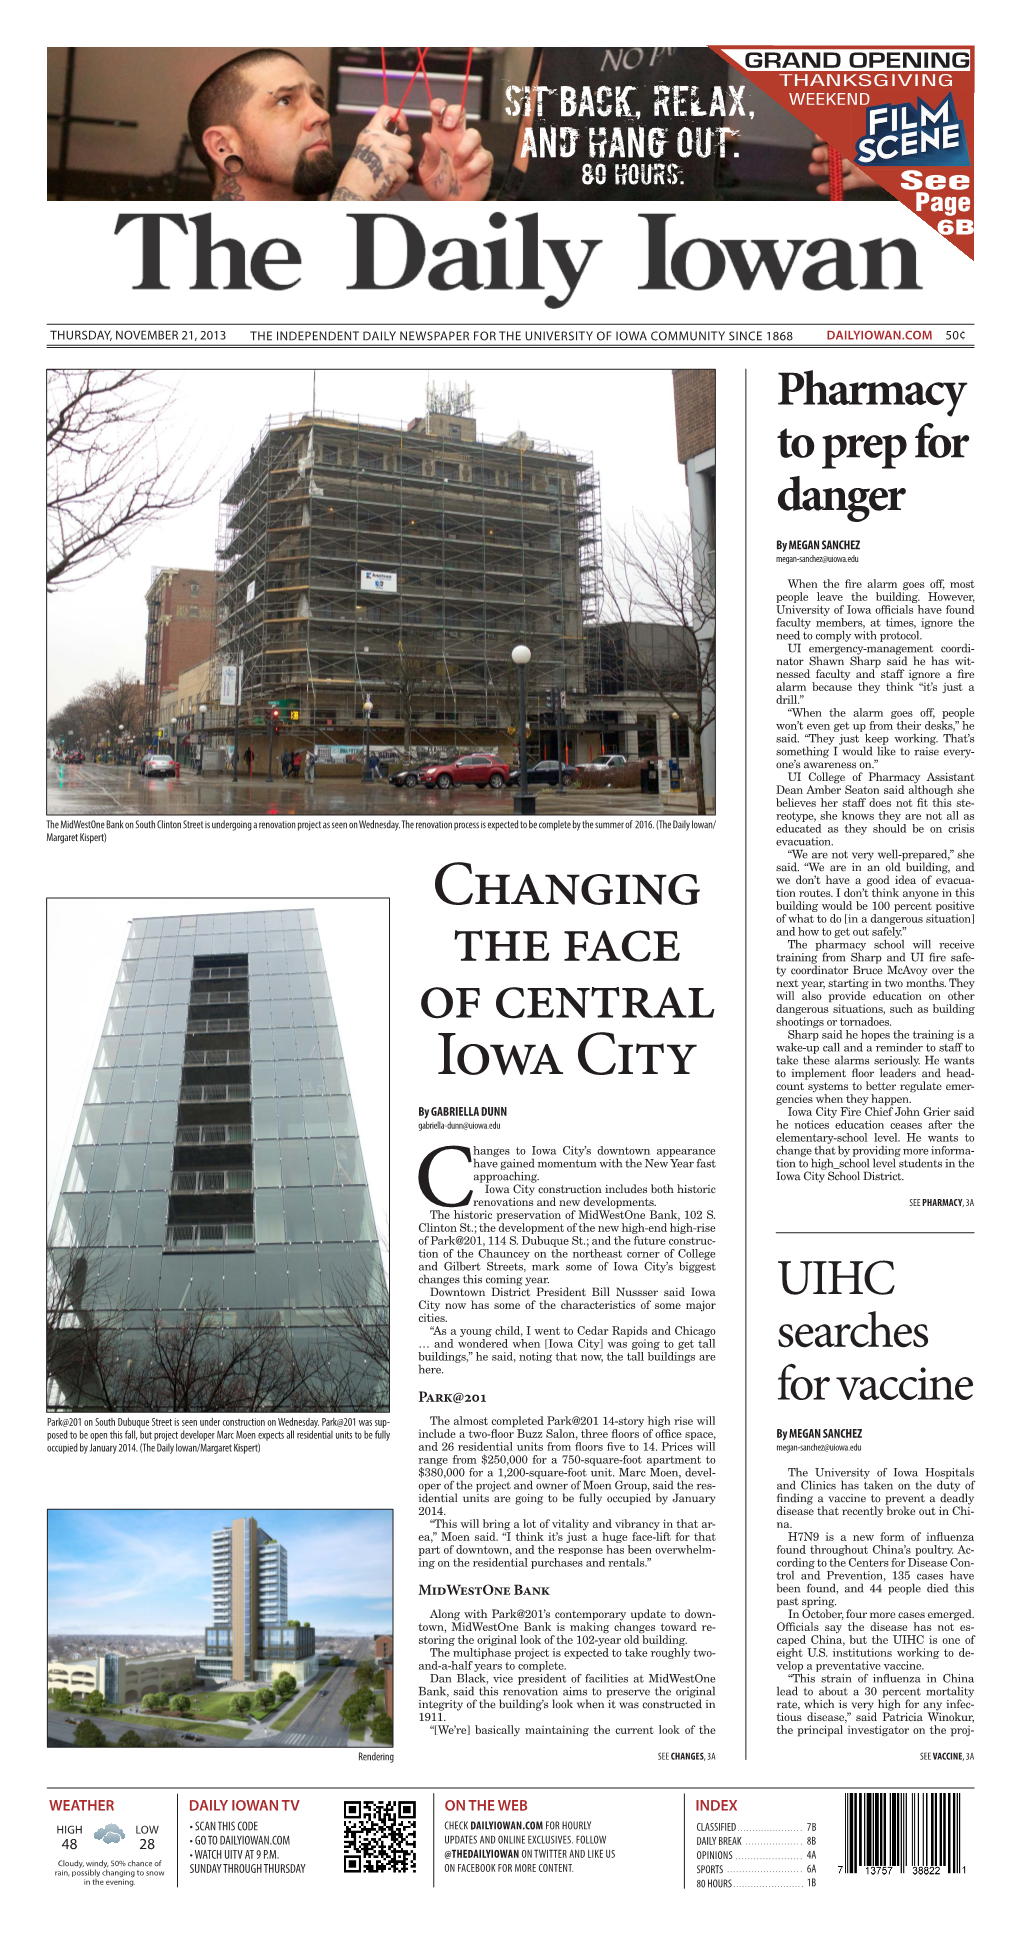 Daily Iowan (Iowa City, Iowa), 2013-11-21